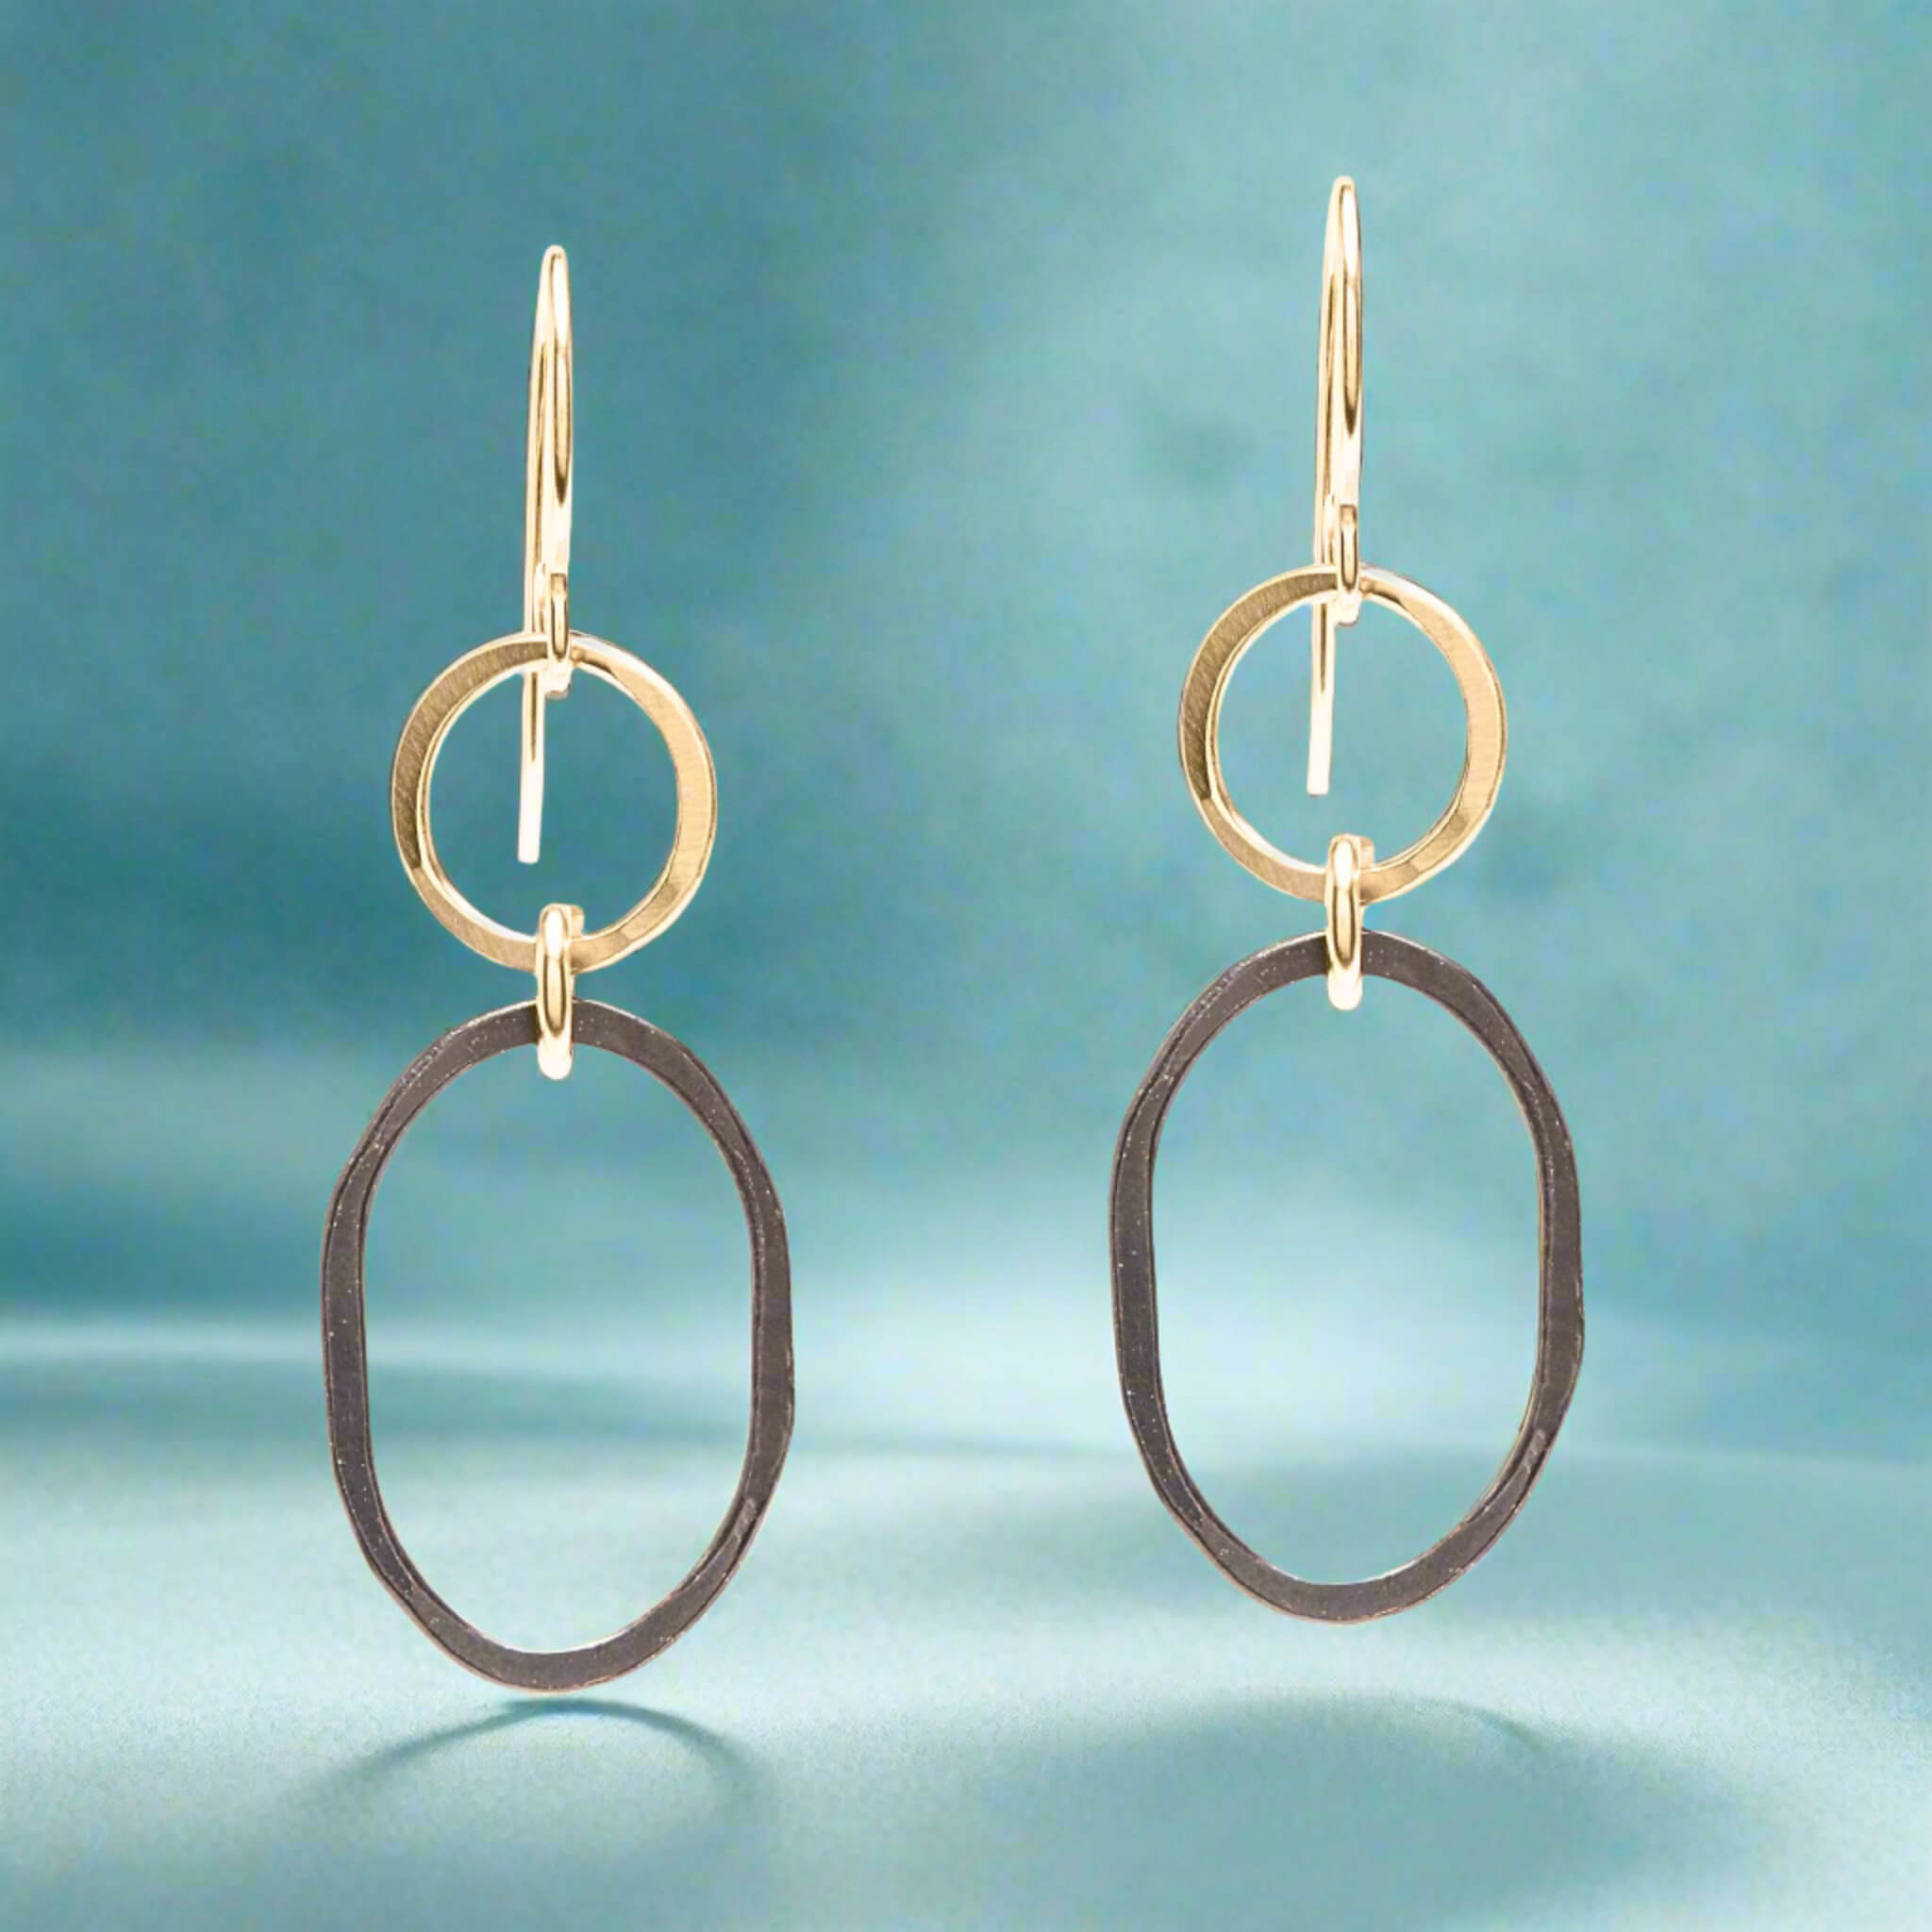 Black + Gold Oval Earring - Earrings